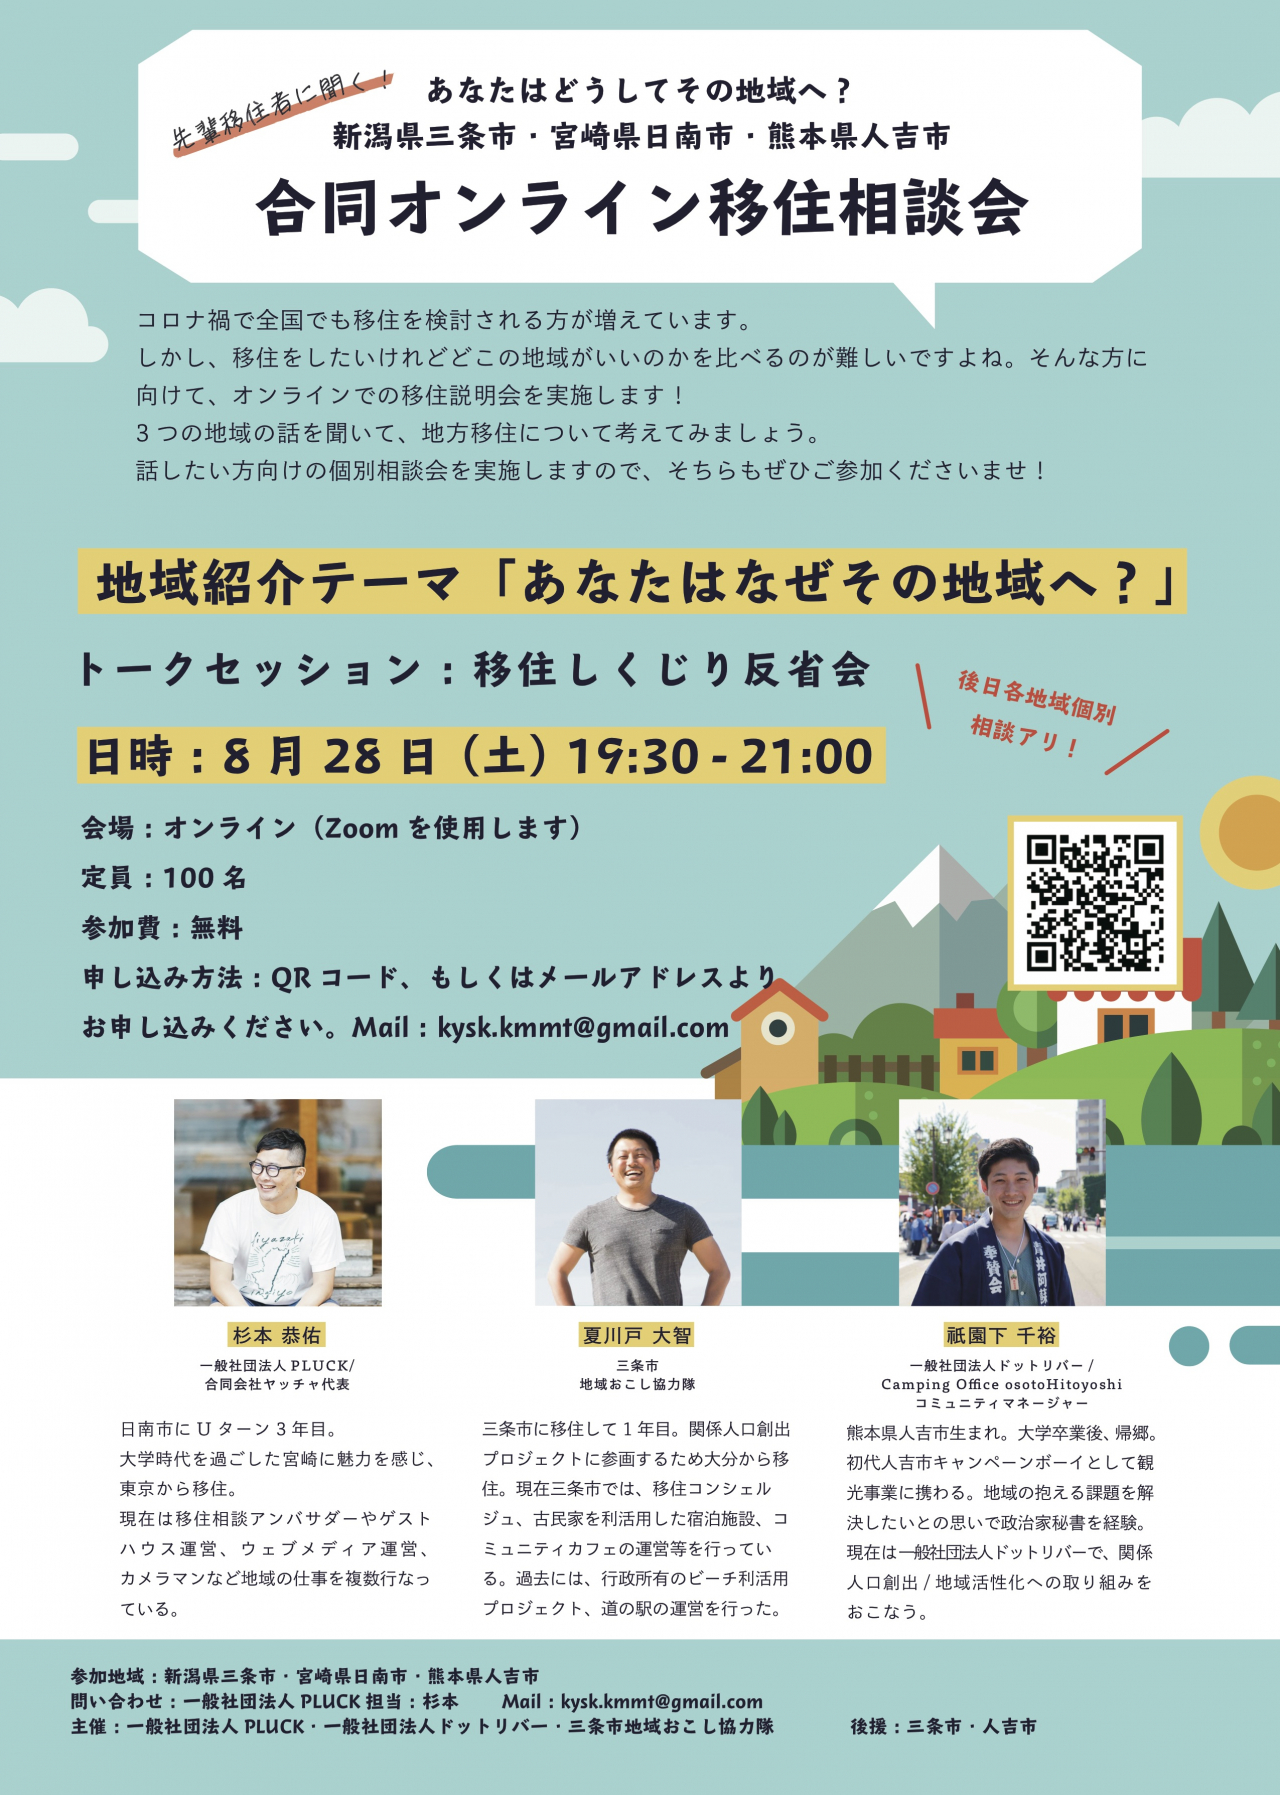 オンライン移住イベントを開催します トピックス 熊本 人吉 コワーキングスペースcampingoffice Osoto Hitoyoshi